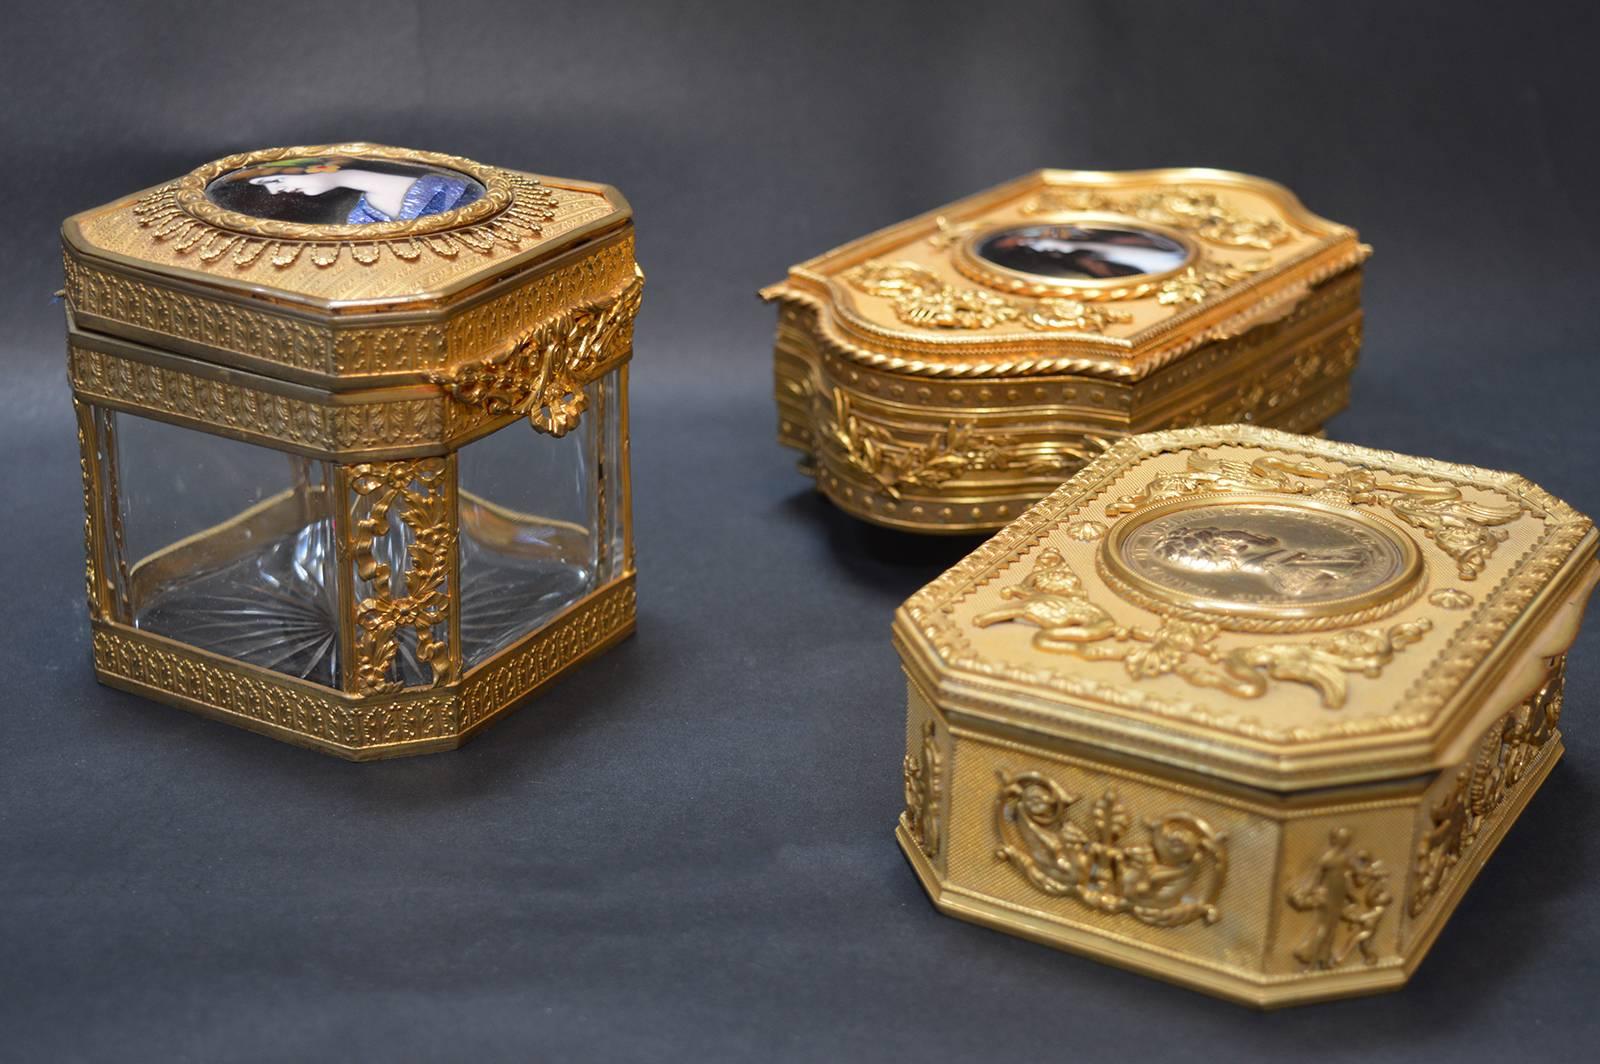 Trois boîtes du XIXe siècle. Peint à la main
La boîte en verre carrée mesure 3,5